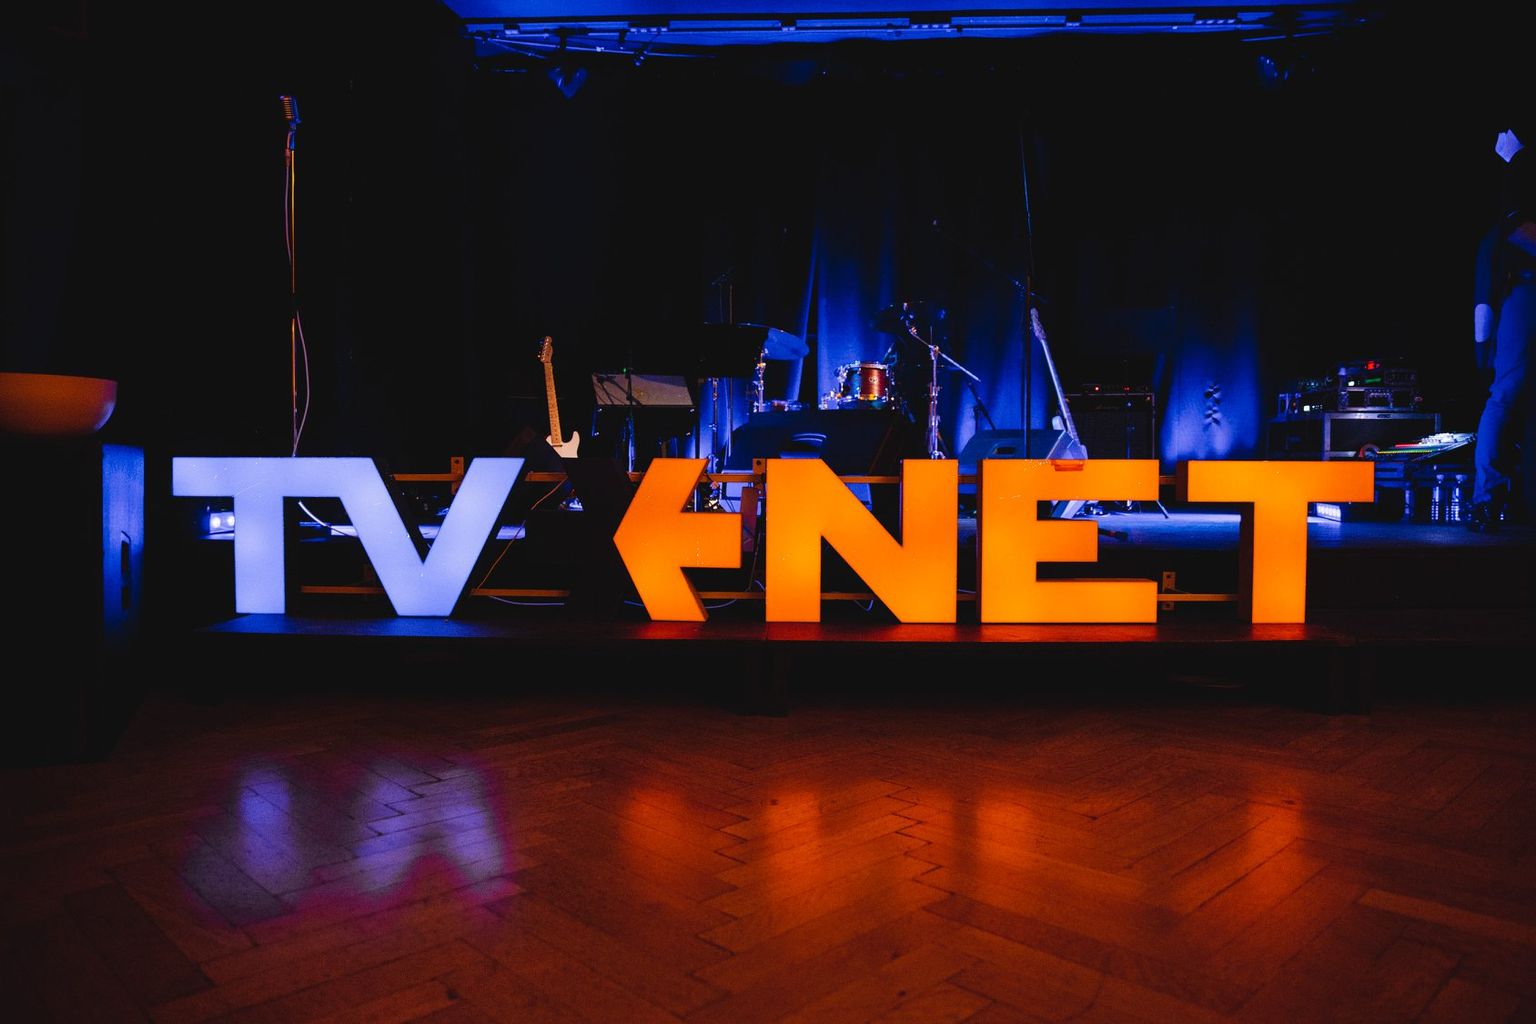 TVNET logo